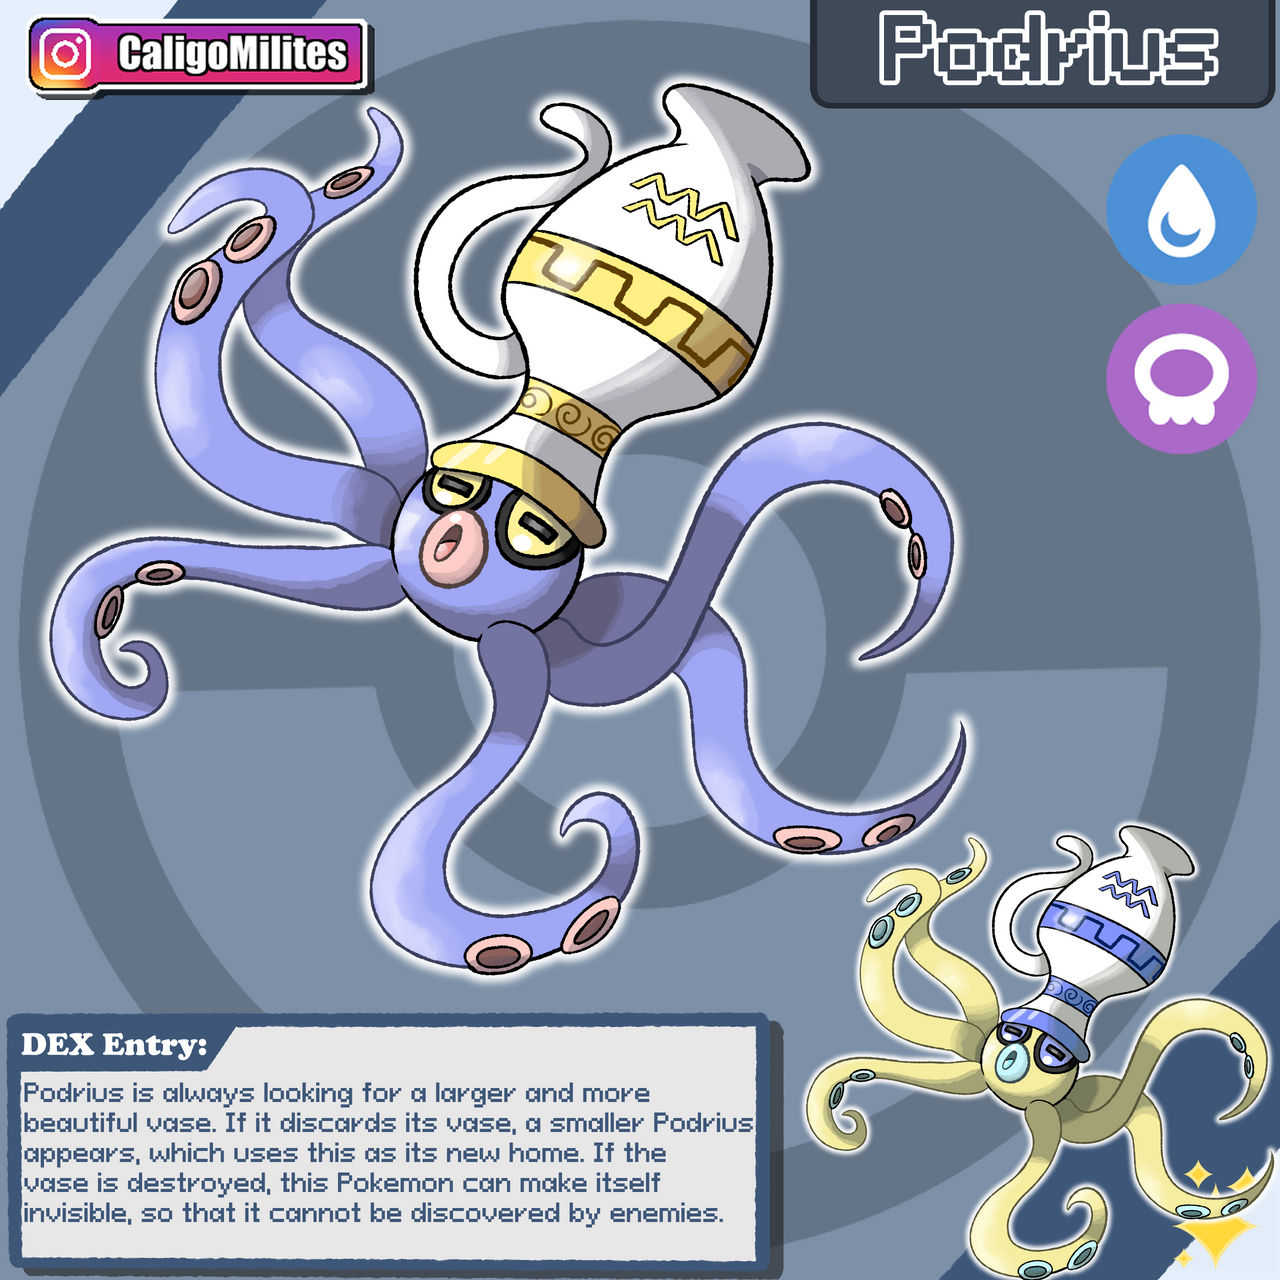 Pokémoluscos: os cefalópodes no mundo Pokémon - AquaA3 Aquarismo